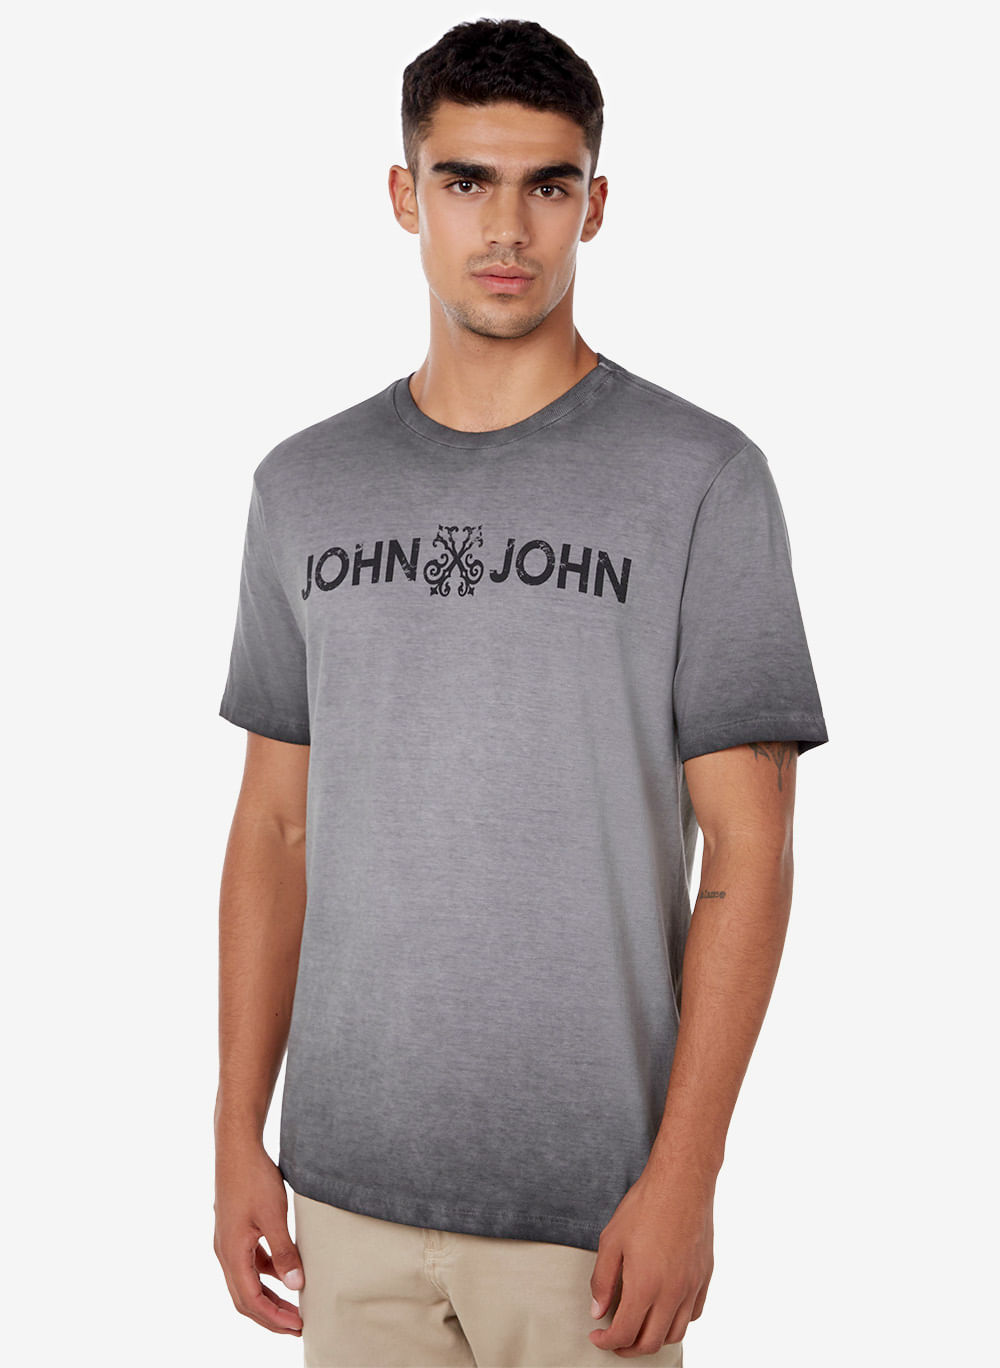 Camiseta John John Basic Cinza - Compre Agora